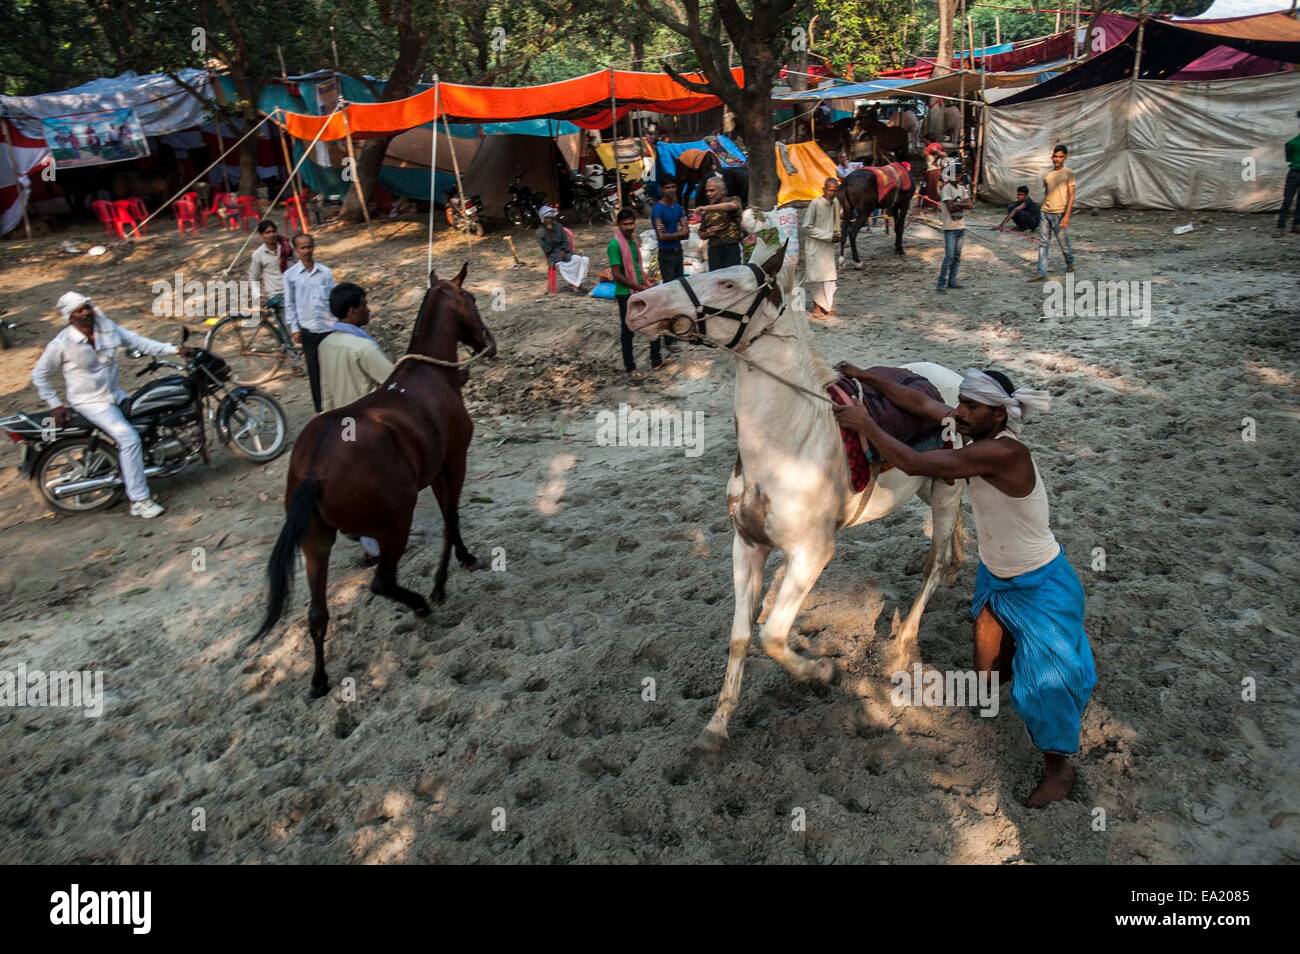 Patna, India. 5 nov, 2014. Los comerciantes de ganado indio preparar caballos para vender en la anual feria de ganado Sonepur, a unos 25 km de Patna, India, el 5 de noviembre de 2014. La feria se celebrará en la confluencia del río Ganges y Gandak. Crédito: Tumpa Mondal/Xinhua/Alamy Live News Foto de stock